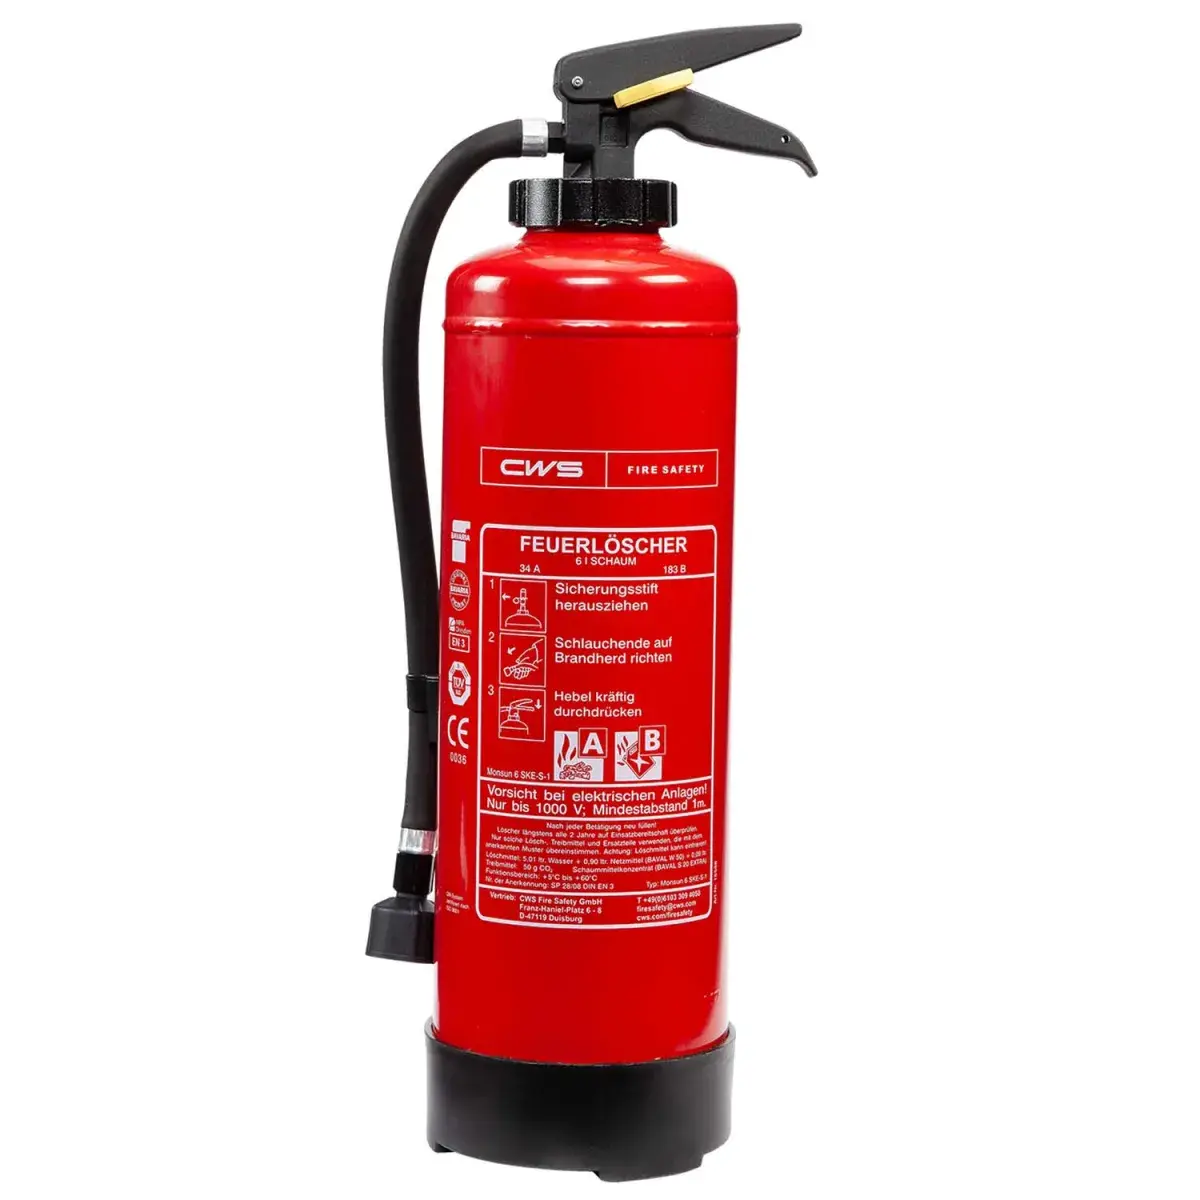 Wie lange ist ein Feuerlöscher haltbar-Feuerlöscher-Haltbarkeit-CWS Fire Safety